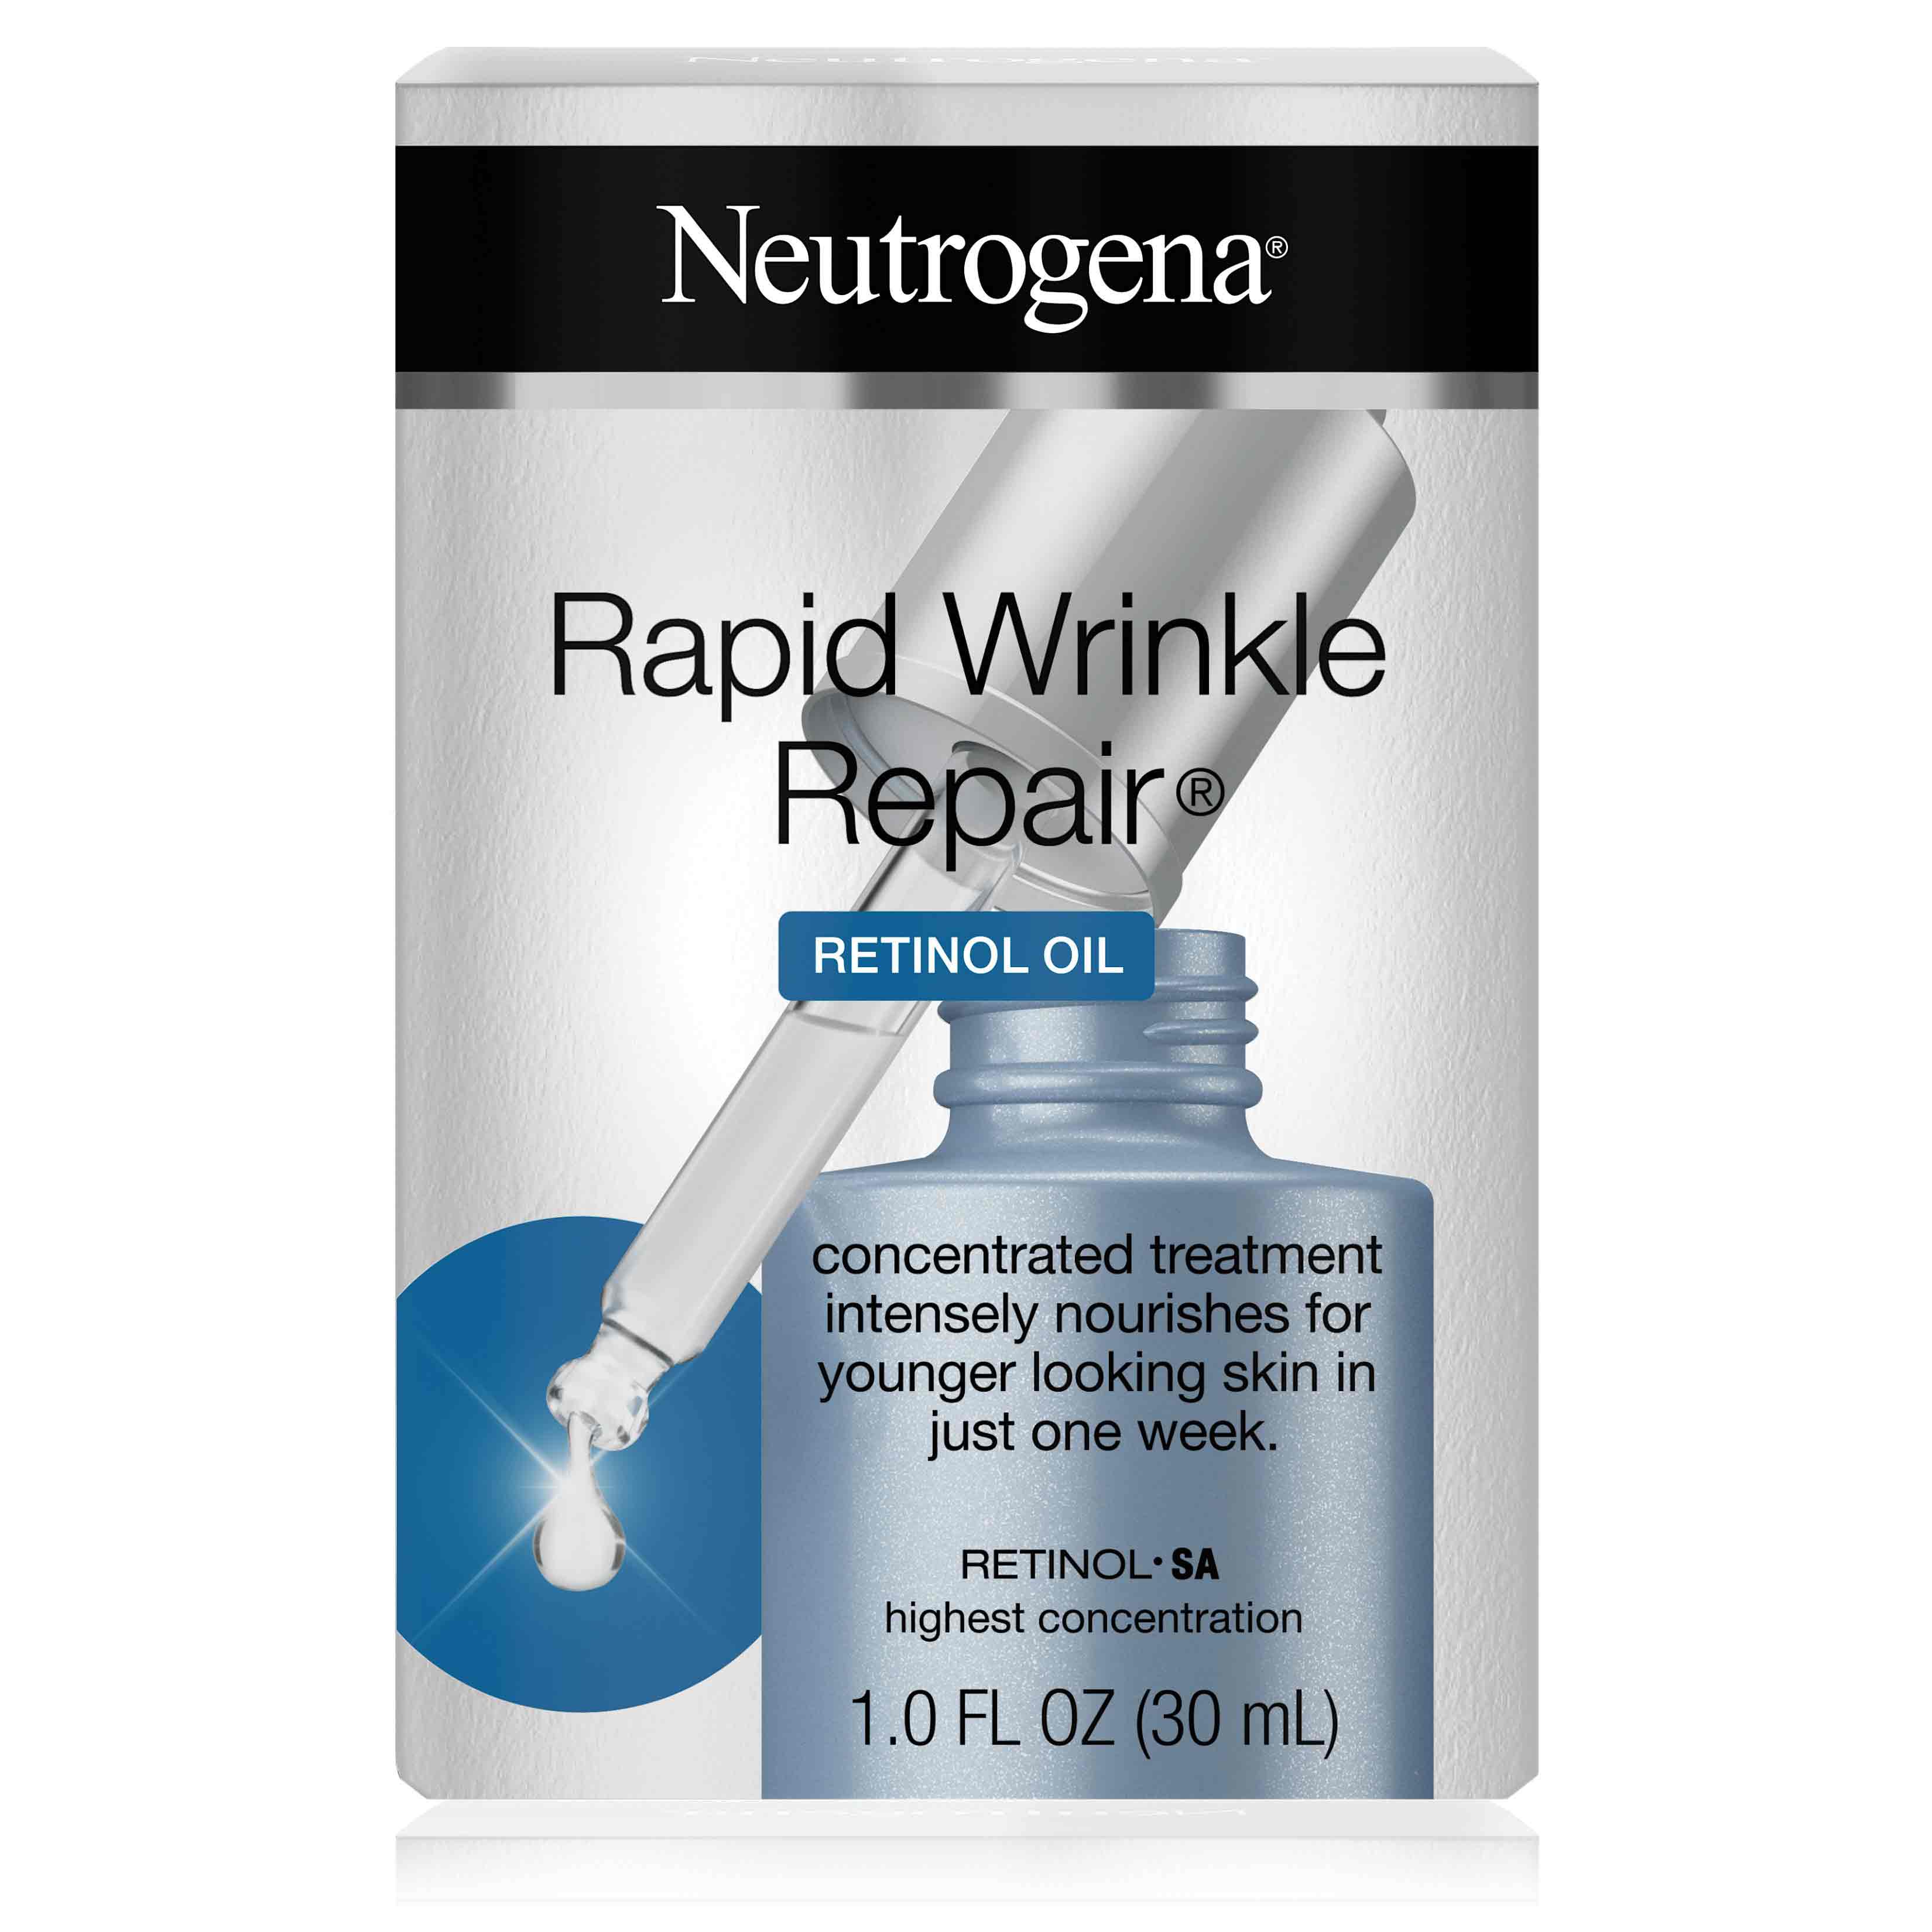 Rapid Wrinkle Repair® Retinol Oil